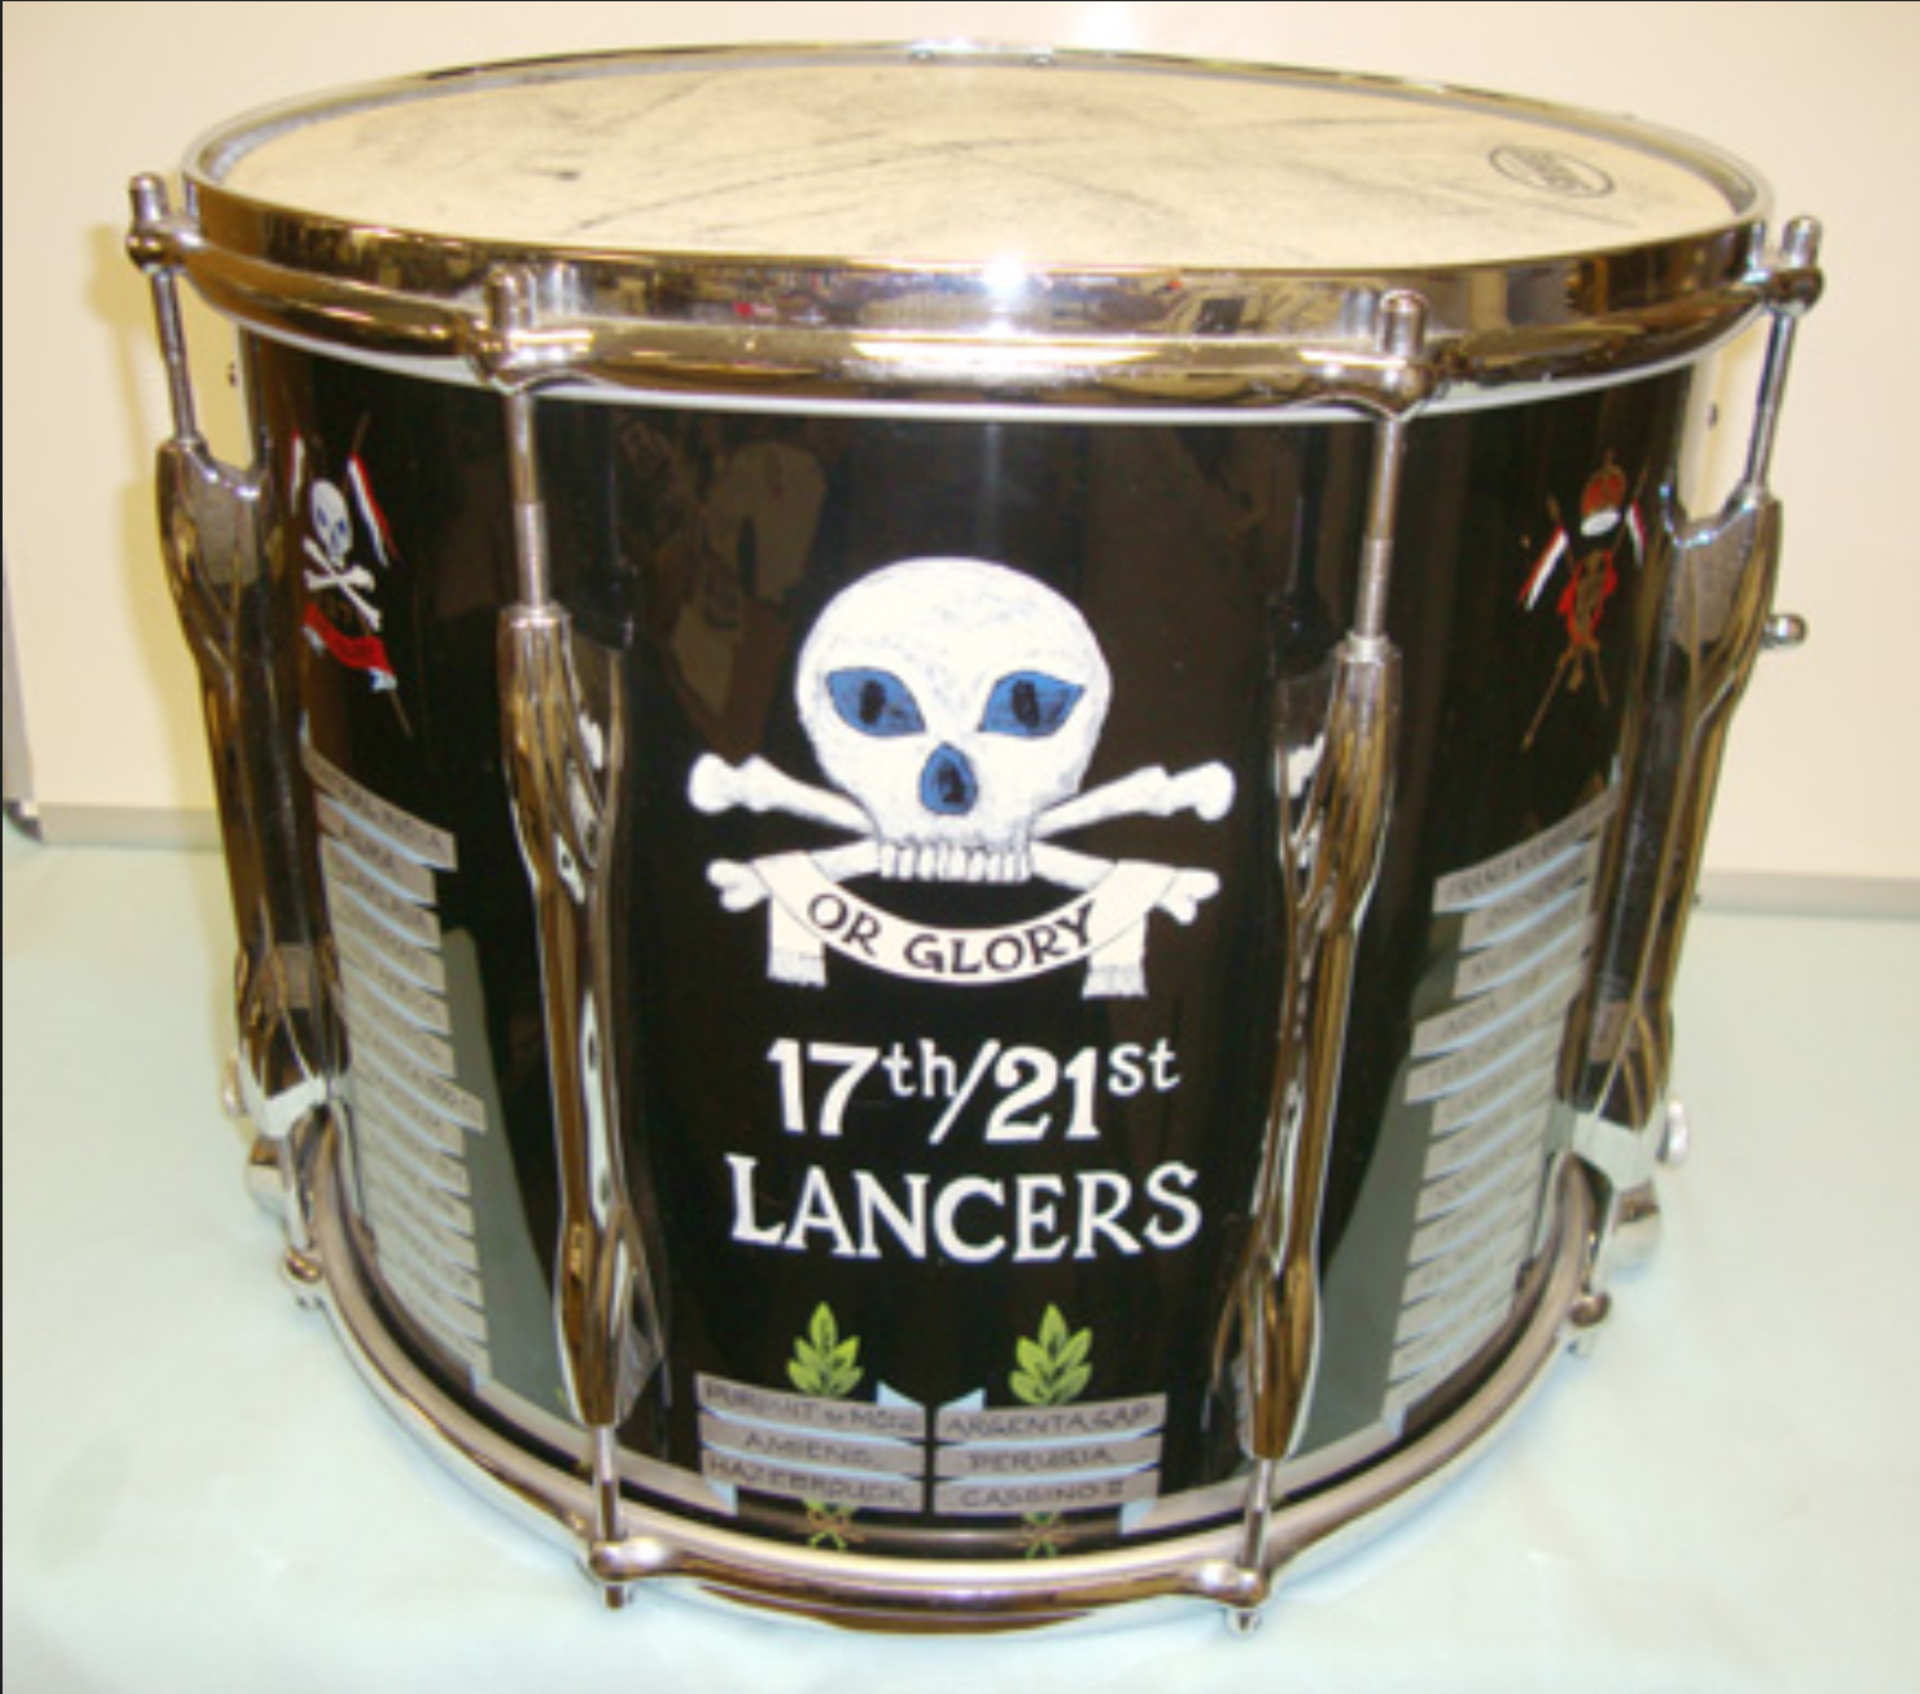 Original 'Premier' 17th/21st Lancers Regimental Side Drum.